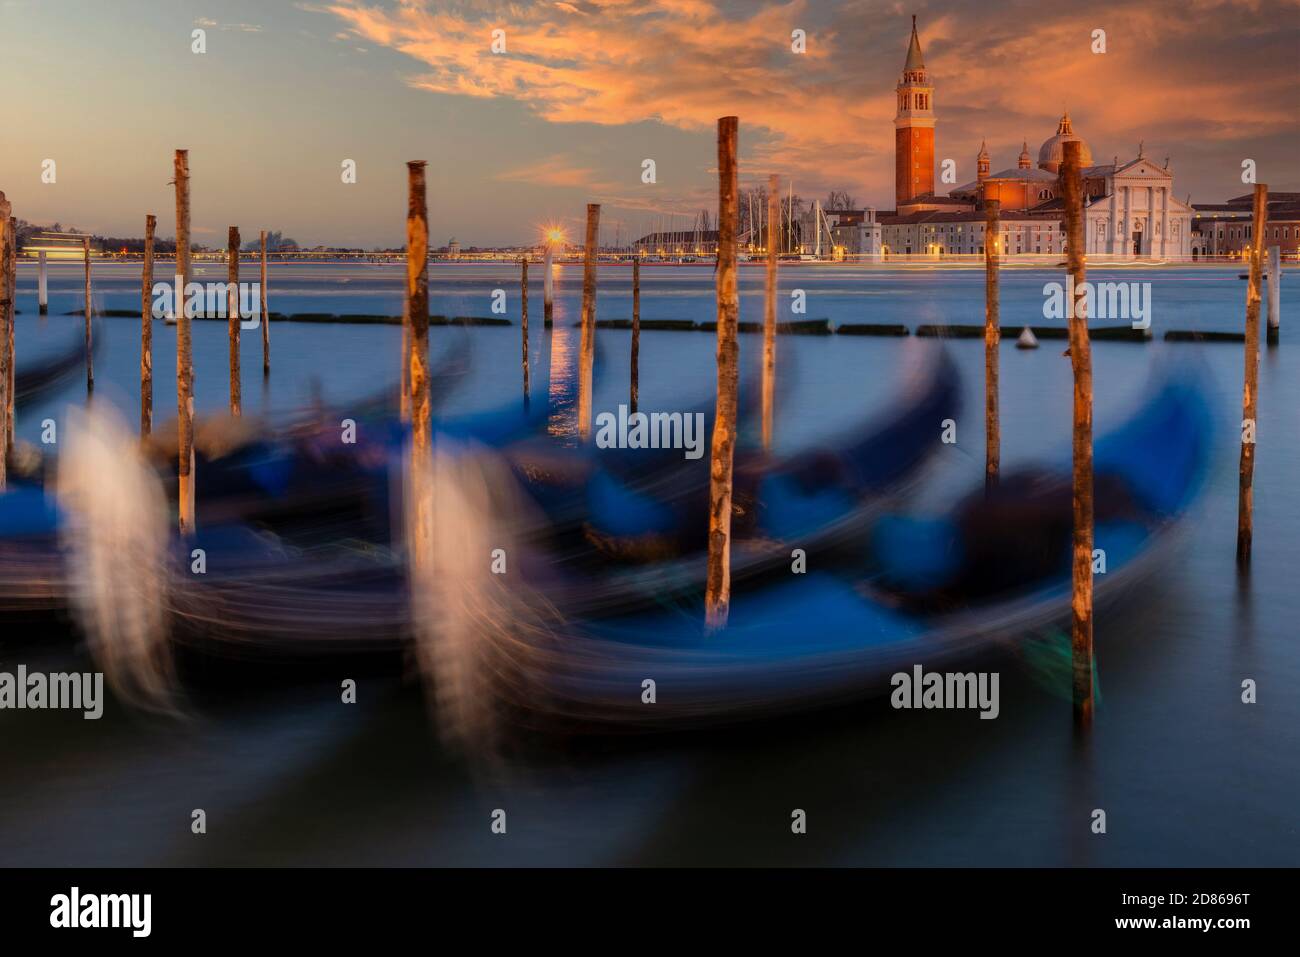 Moored gondolas with San Giorgio Maggiore island in the background at sunset, Venice, Veneto, Italy Stock Photo